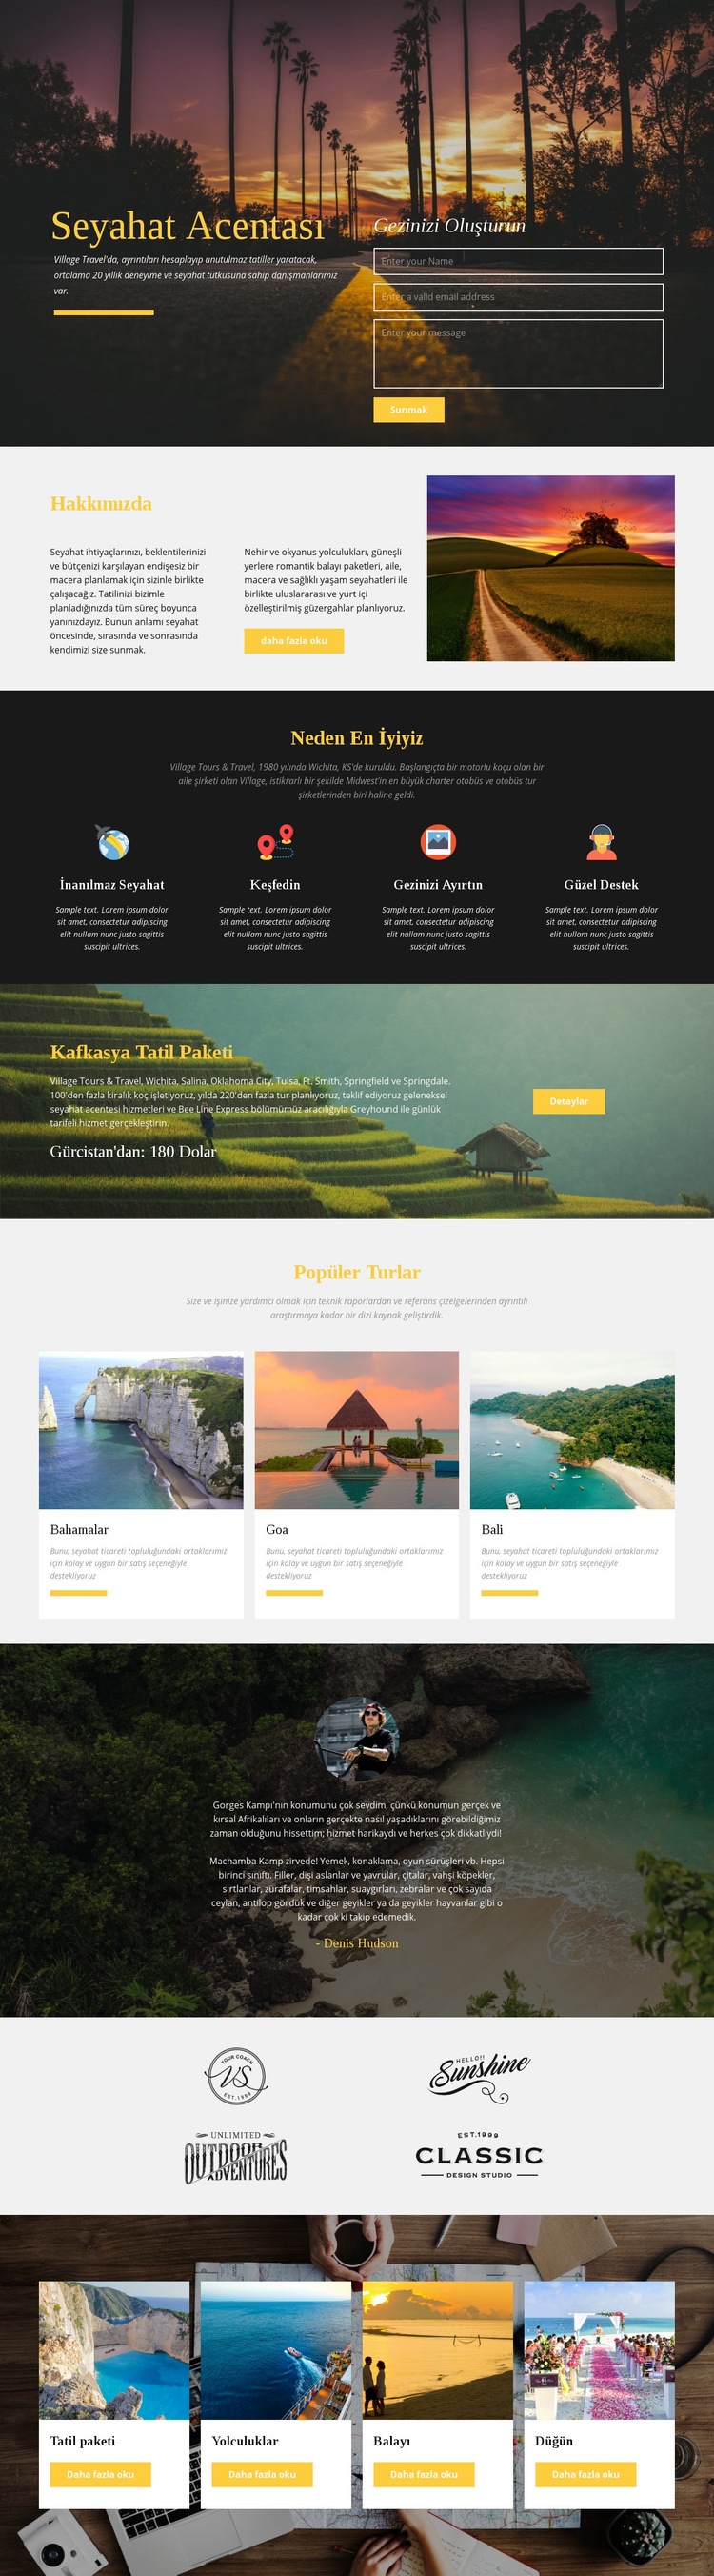 Afrika safari tur şirketi Web sitesi tasarımı